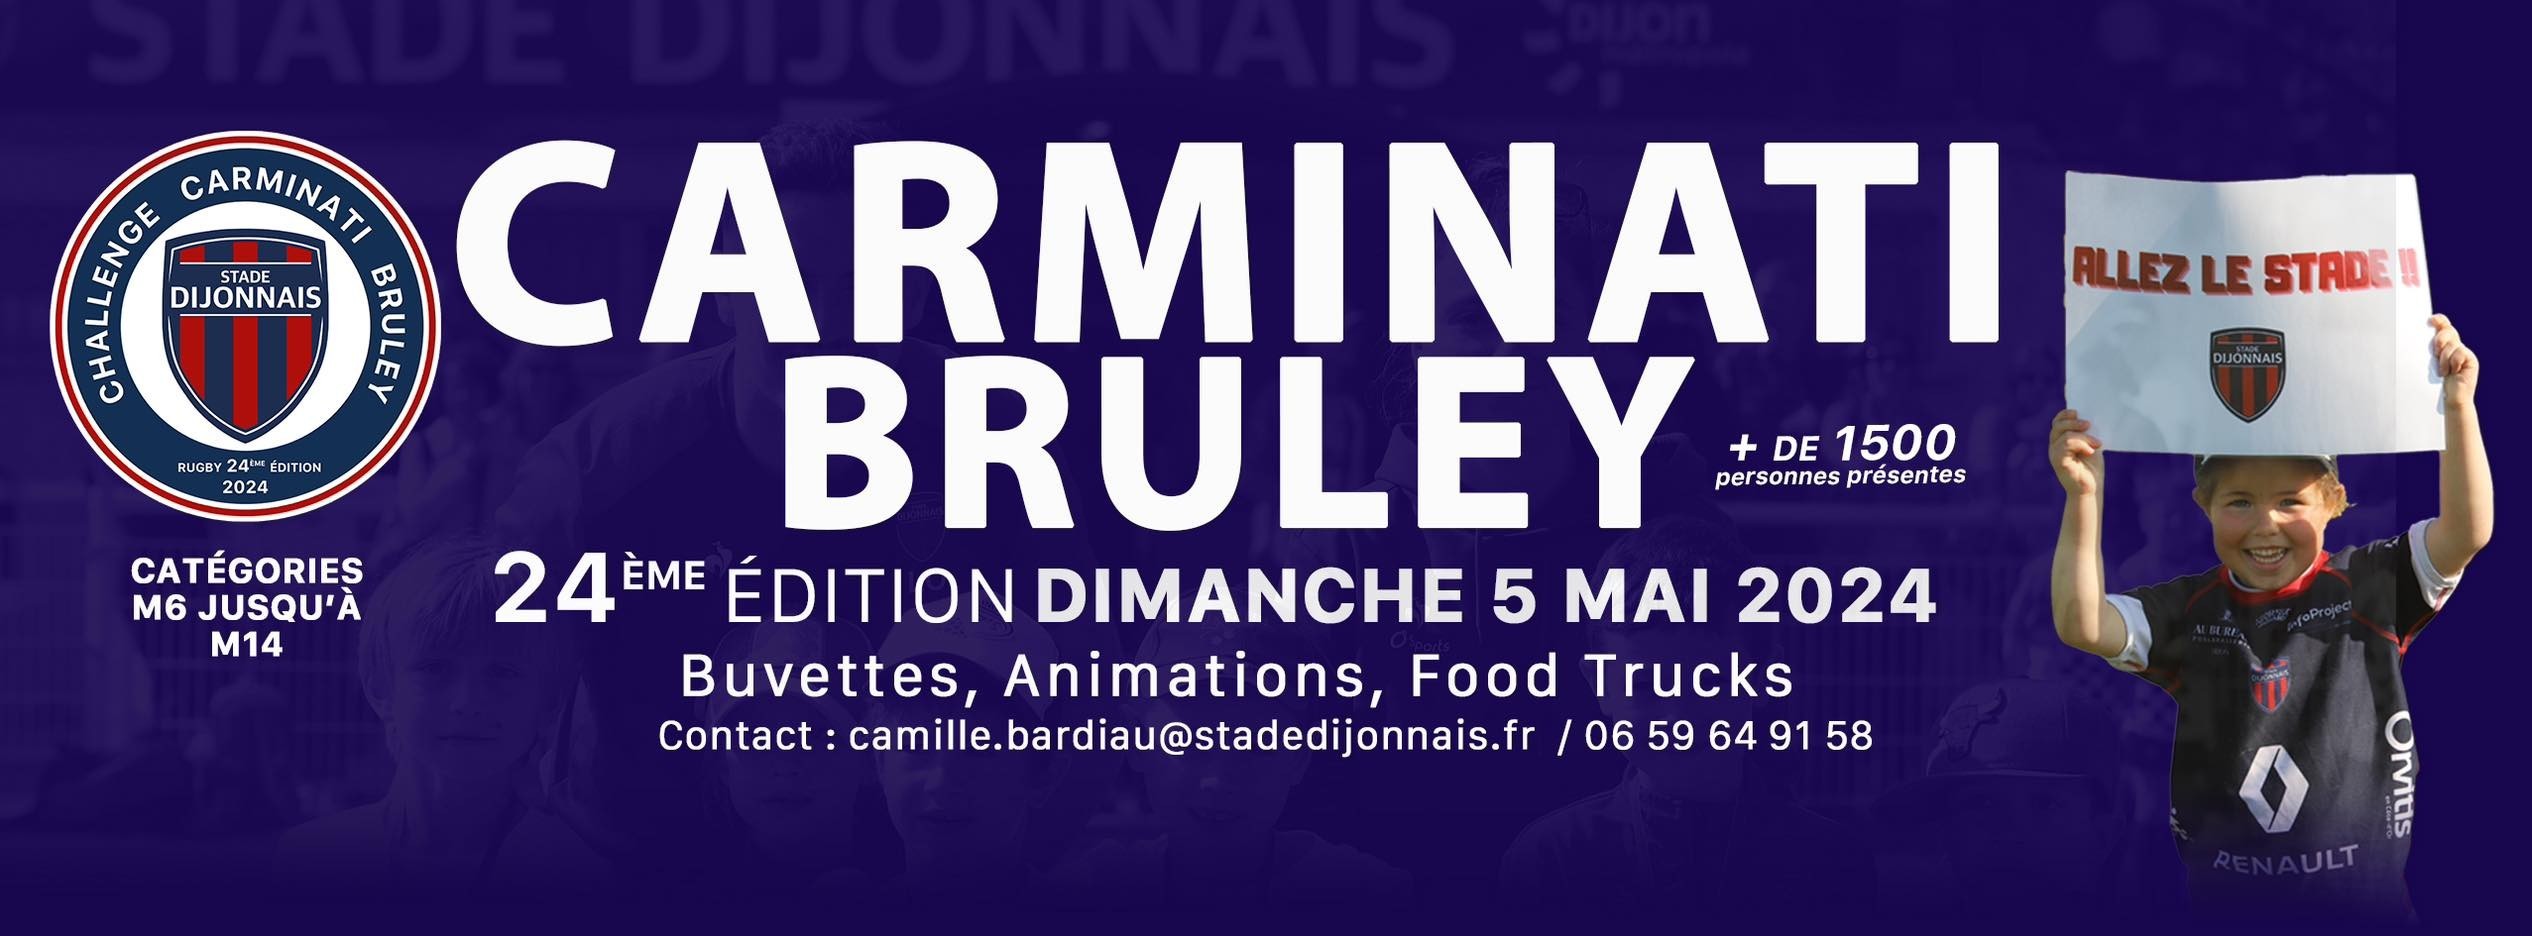 24èle édition du tournoi Carminati Bruley